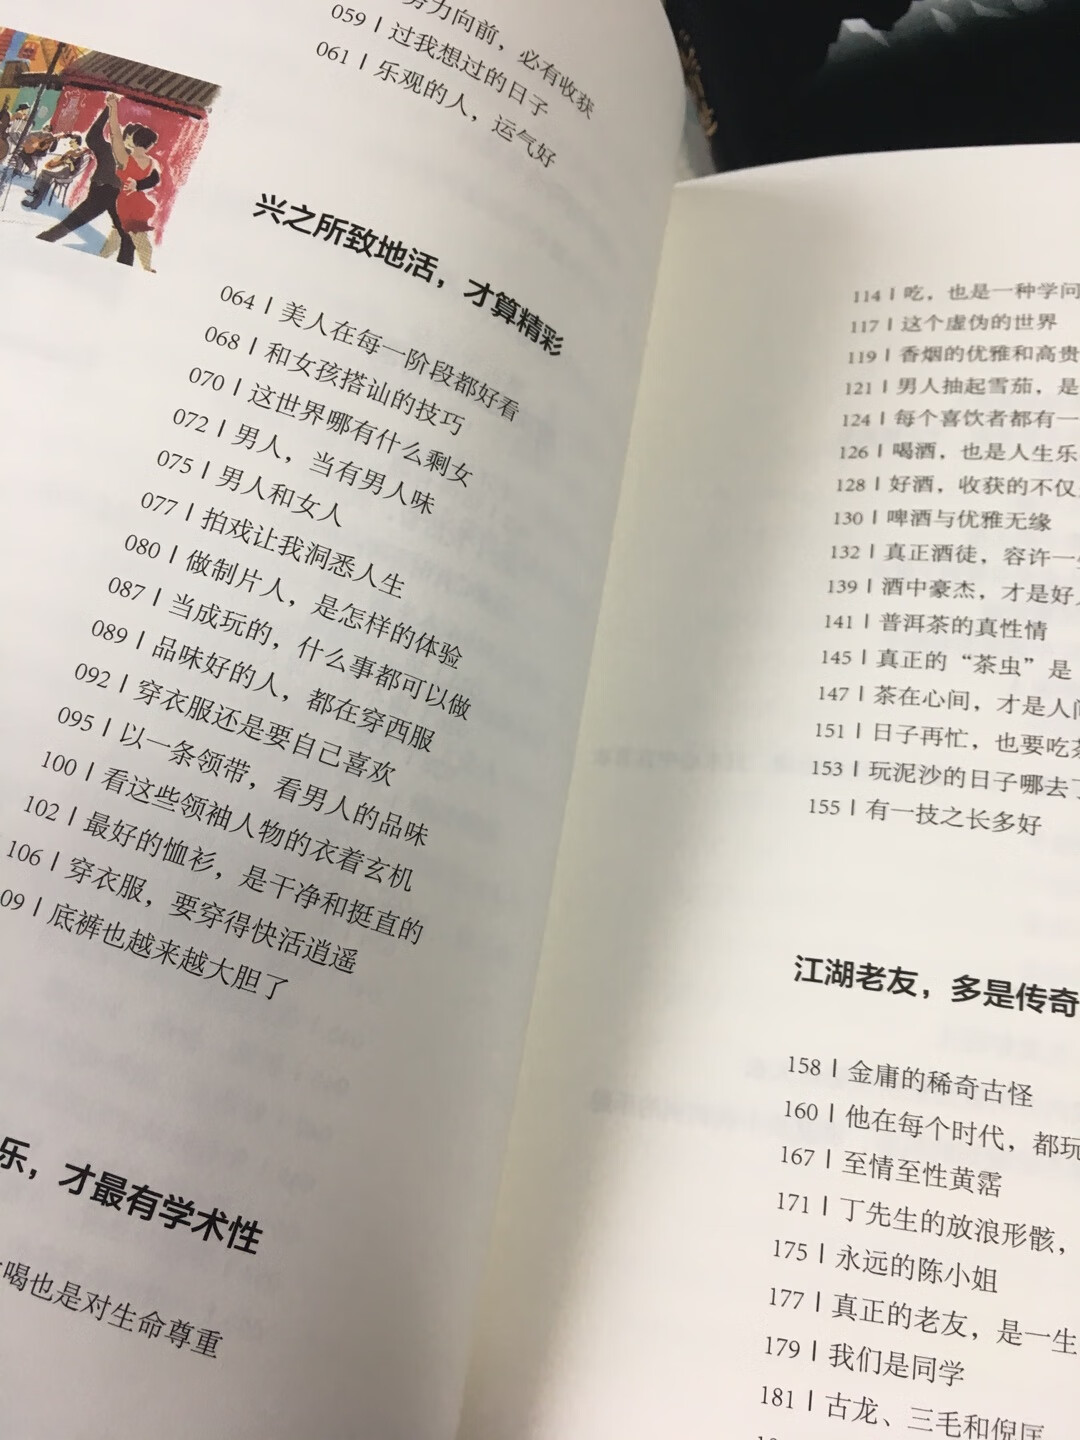 蔡澜先生的书不错，他的生活态度值得我们学习。